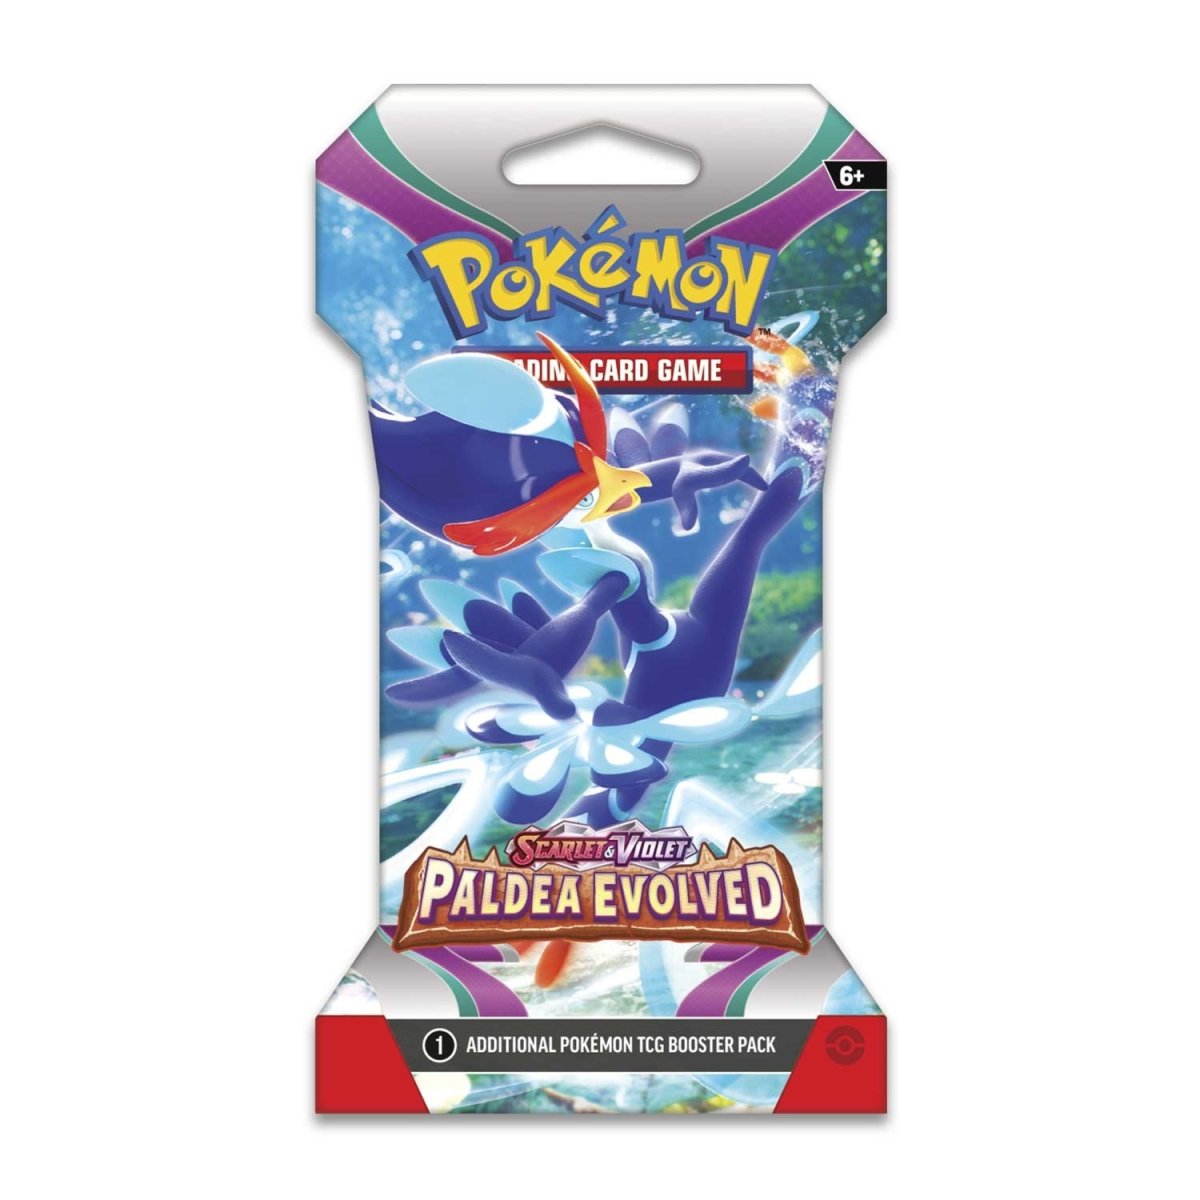 Pokémon TCG: Scarlet & Violet SV02 Paldea Evolved Sleeved Booster Pack